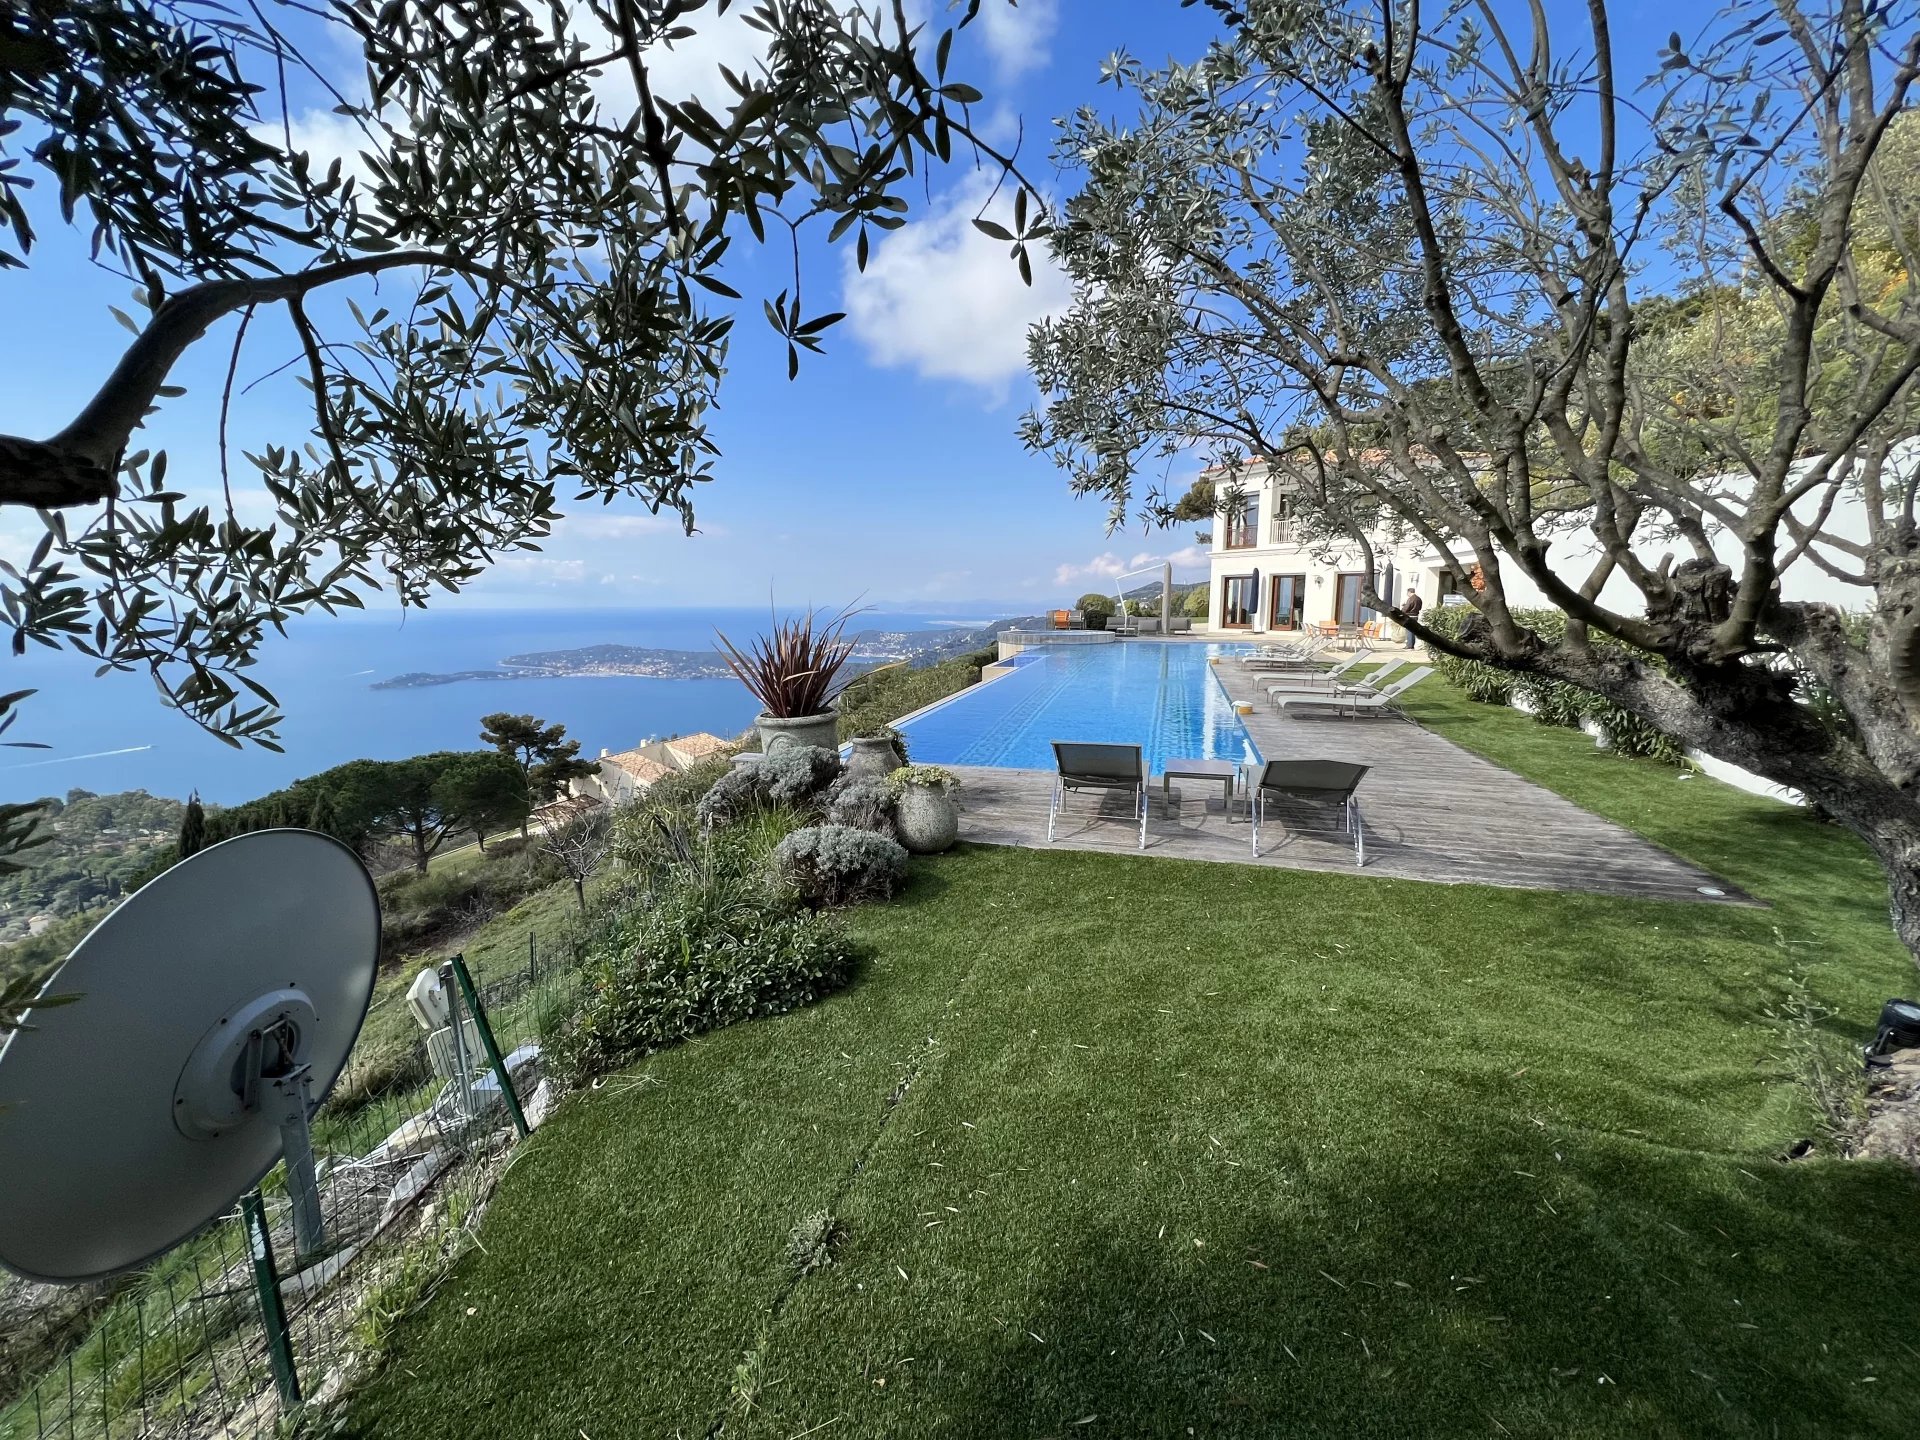 Gentleman property overlooking the sea and Cap Ferrat